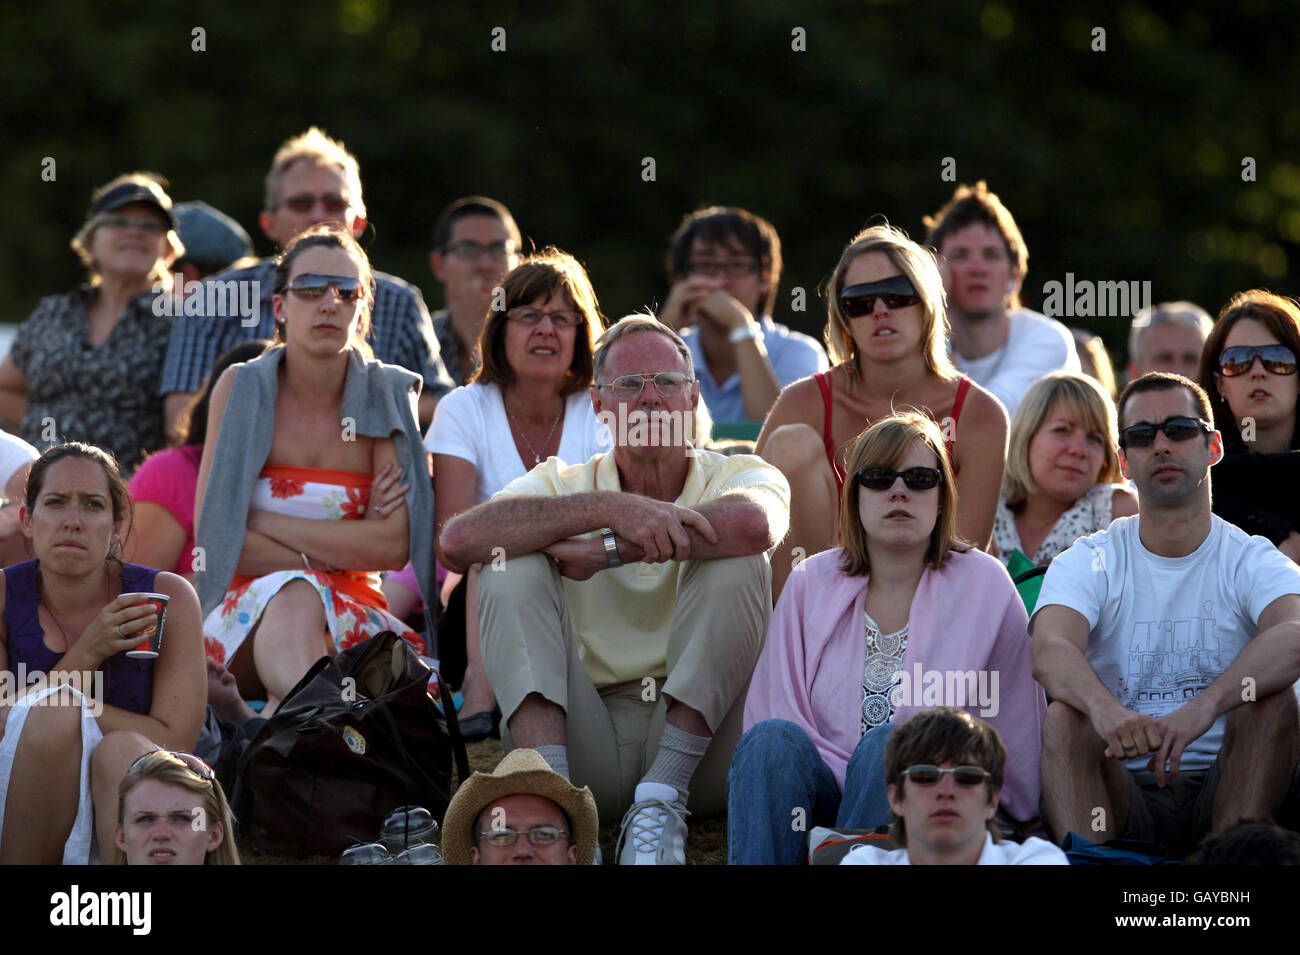 Les spectateurs sur Murray Mount observent le match d'Andy Murrays en Grande-Bretagne contre Richard Gasquet en France lors des championnats de Wimbledon 2008 au All England tennis Club de Wimbledon. Banque D'Images